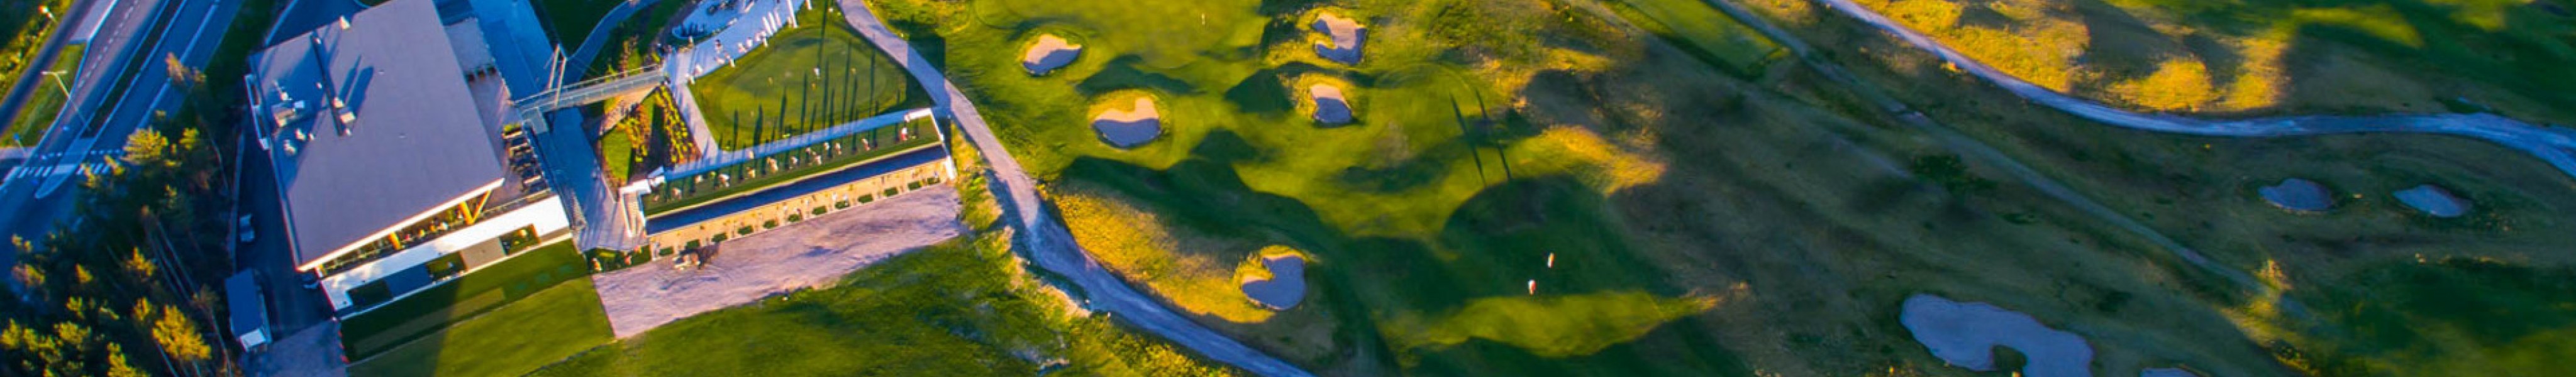 Tapiolan golfkenttä ilmasta katsottuna ympäristöineen.